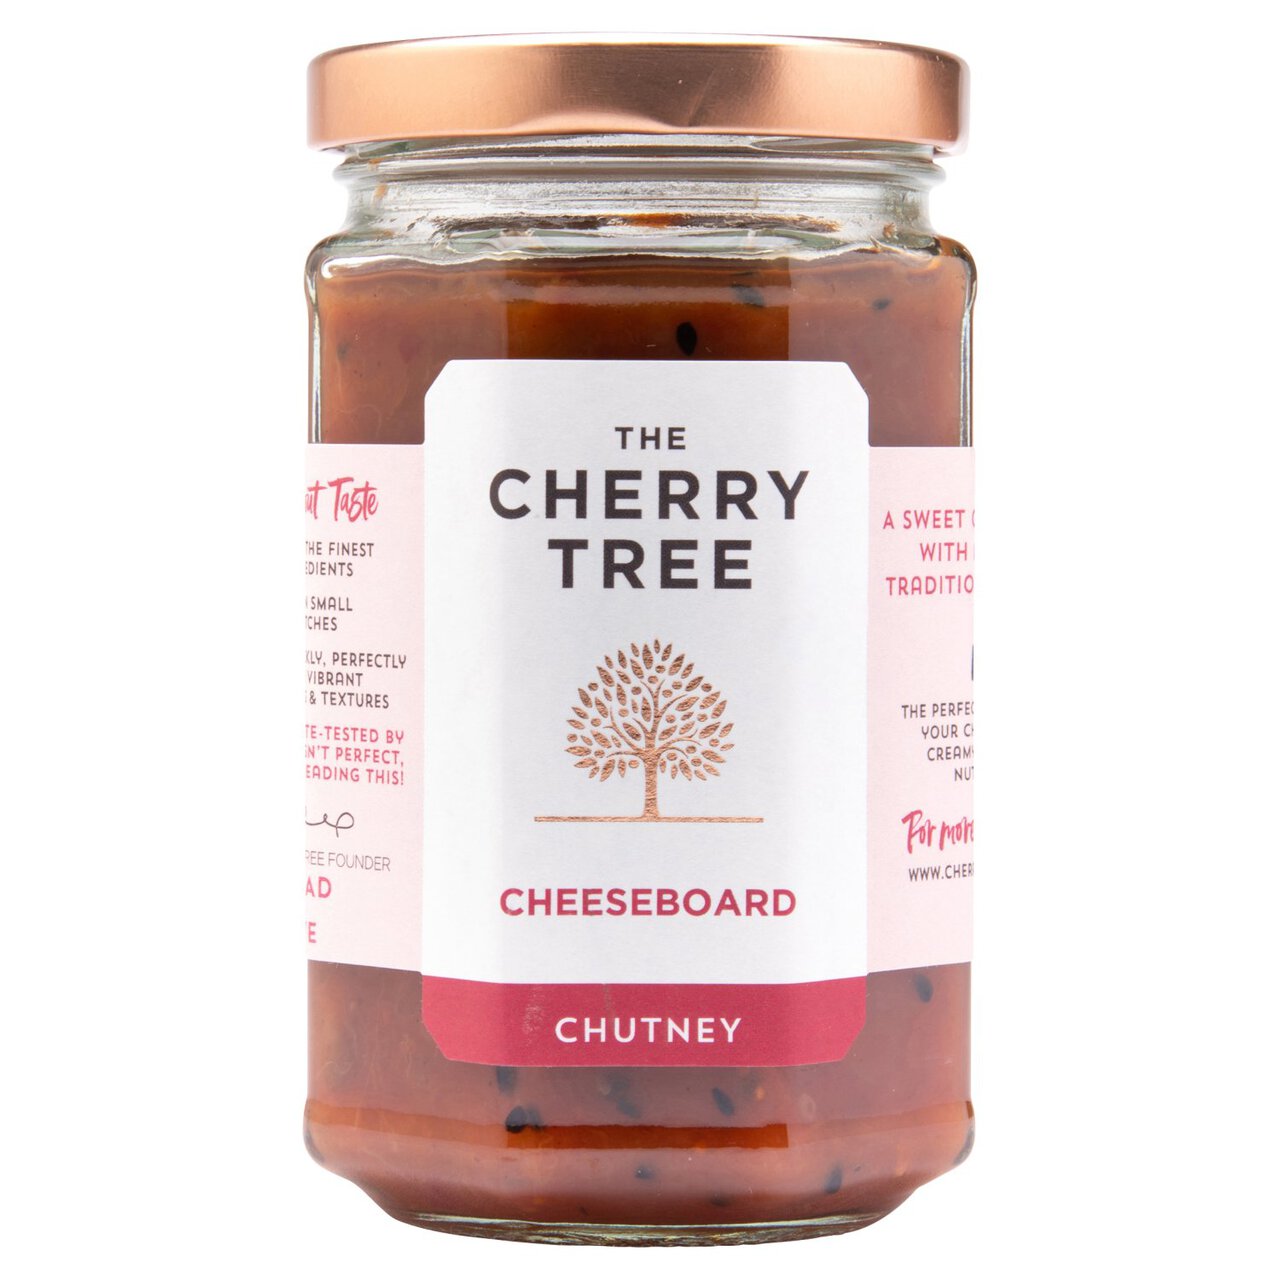 The Cherry Tree Cheeseboard Chutney 300g